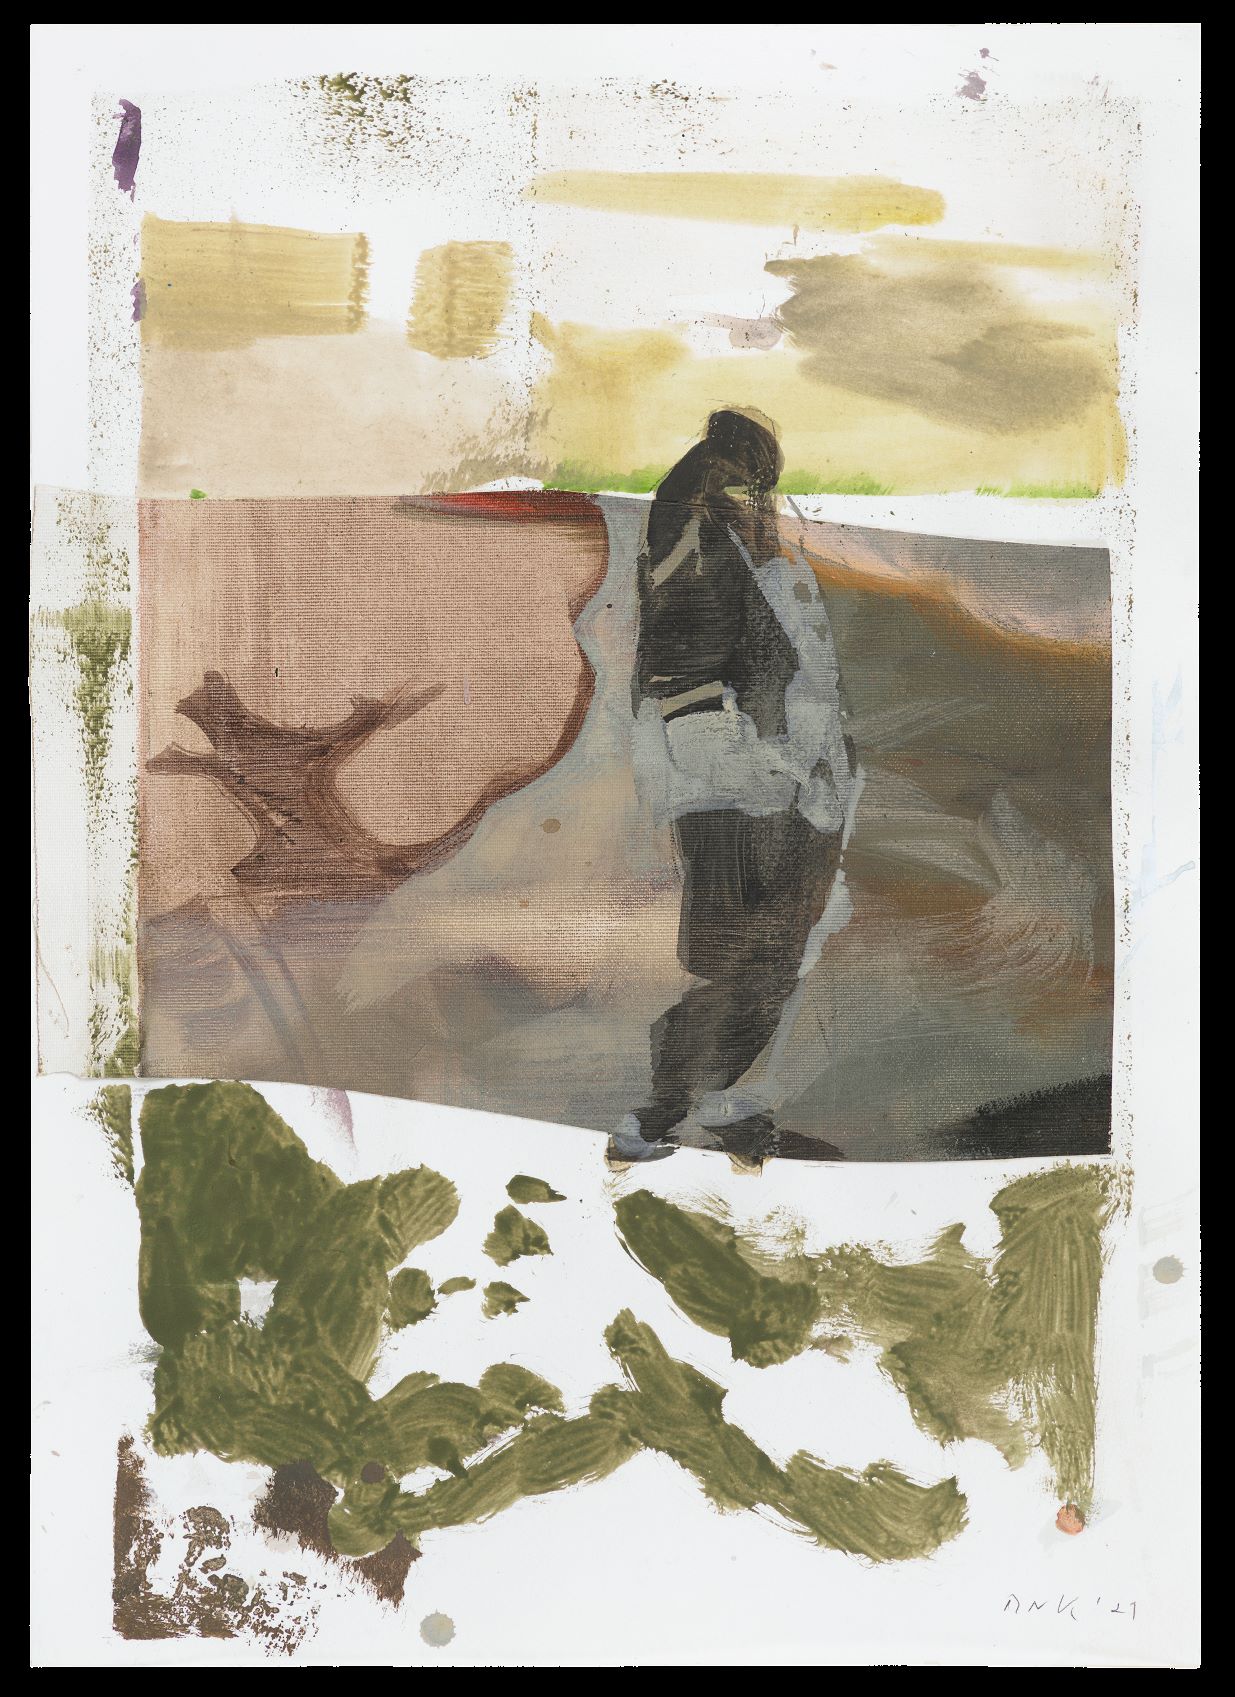 Maki Na Kamura, Ohne Titel, 2021, gouache, oil, egg tempera, collage on paper, glue, 59 x 42 cm